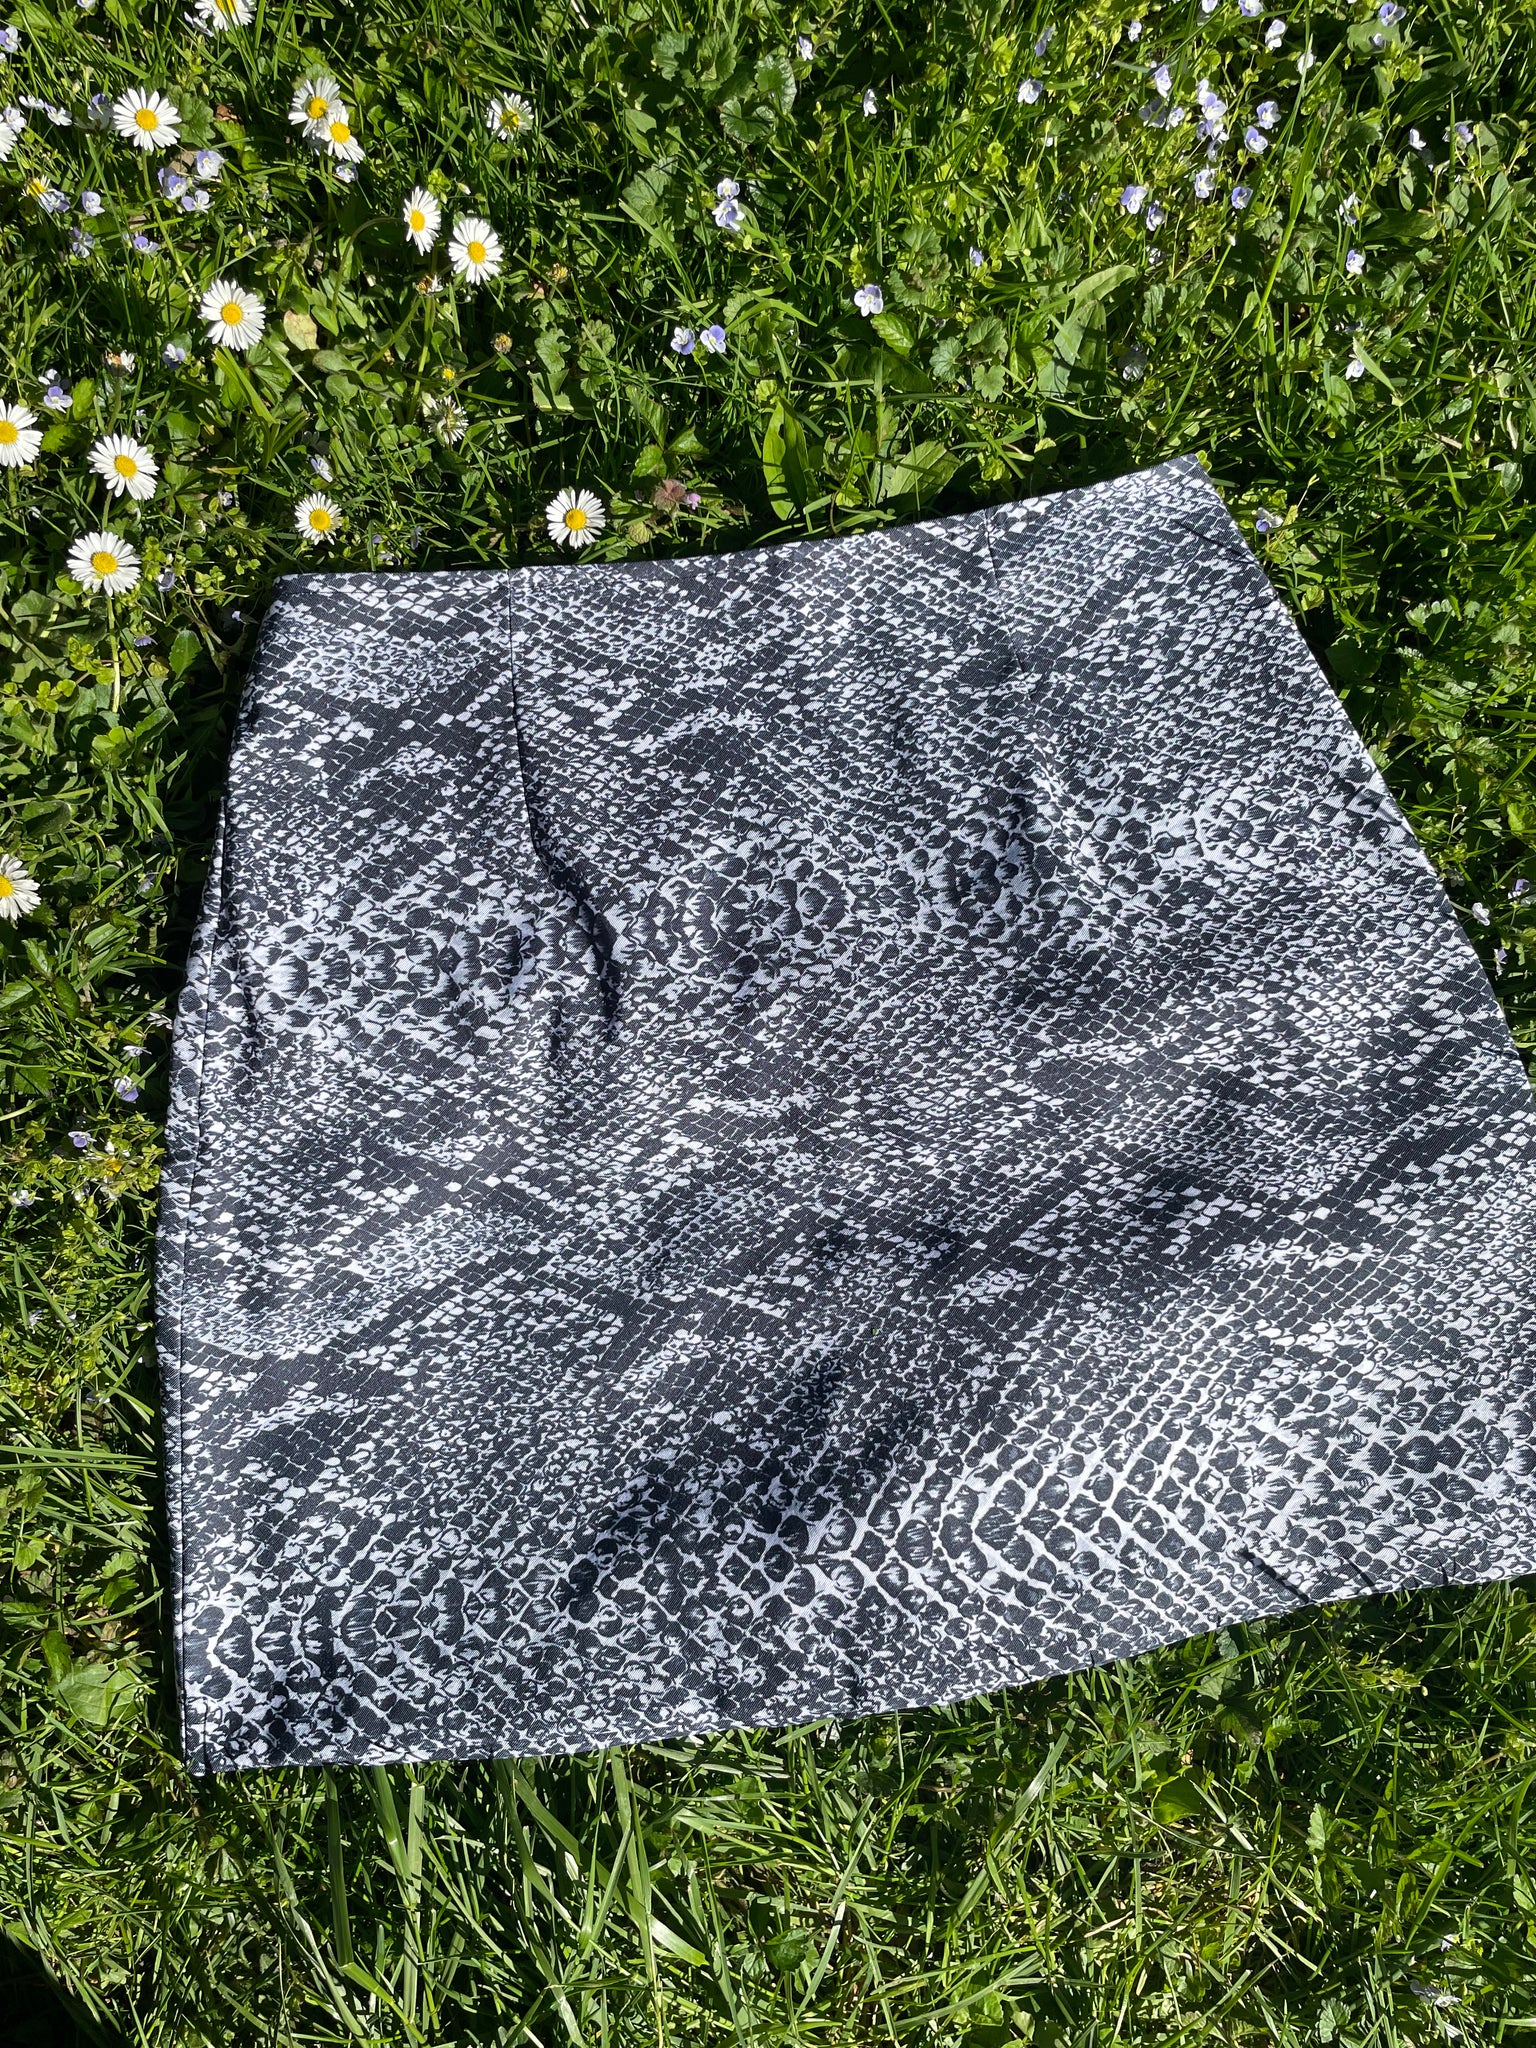 90s snakeskin mini skirt, Size 6